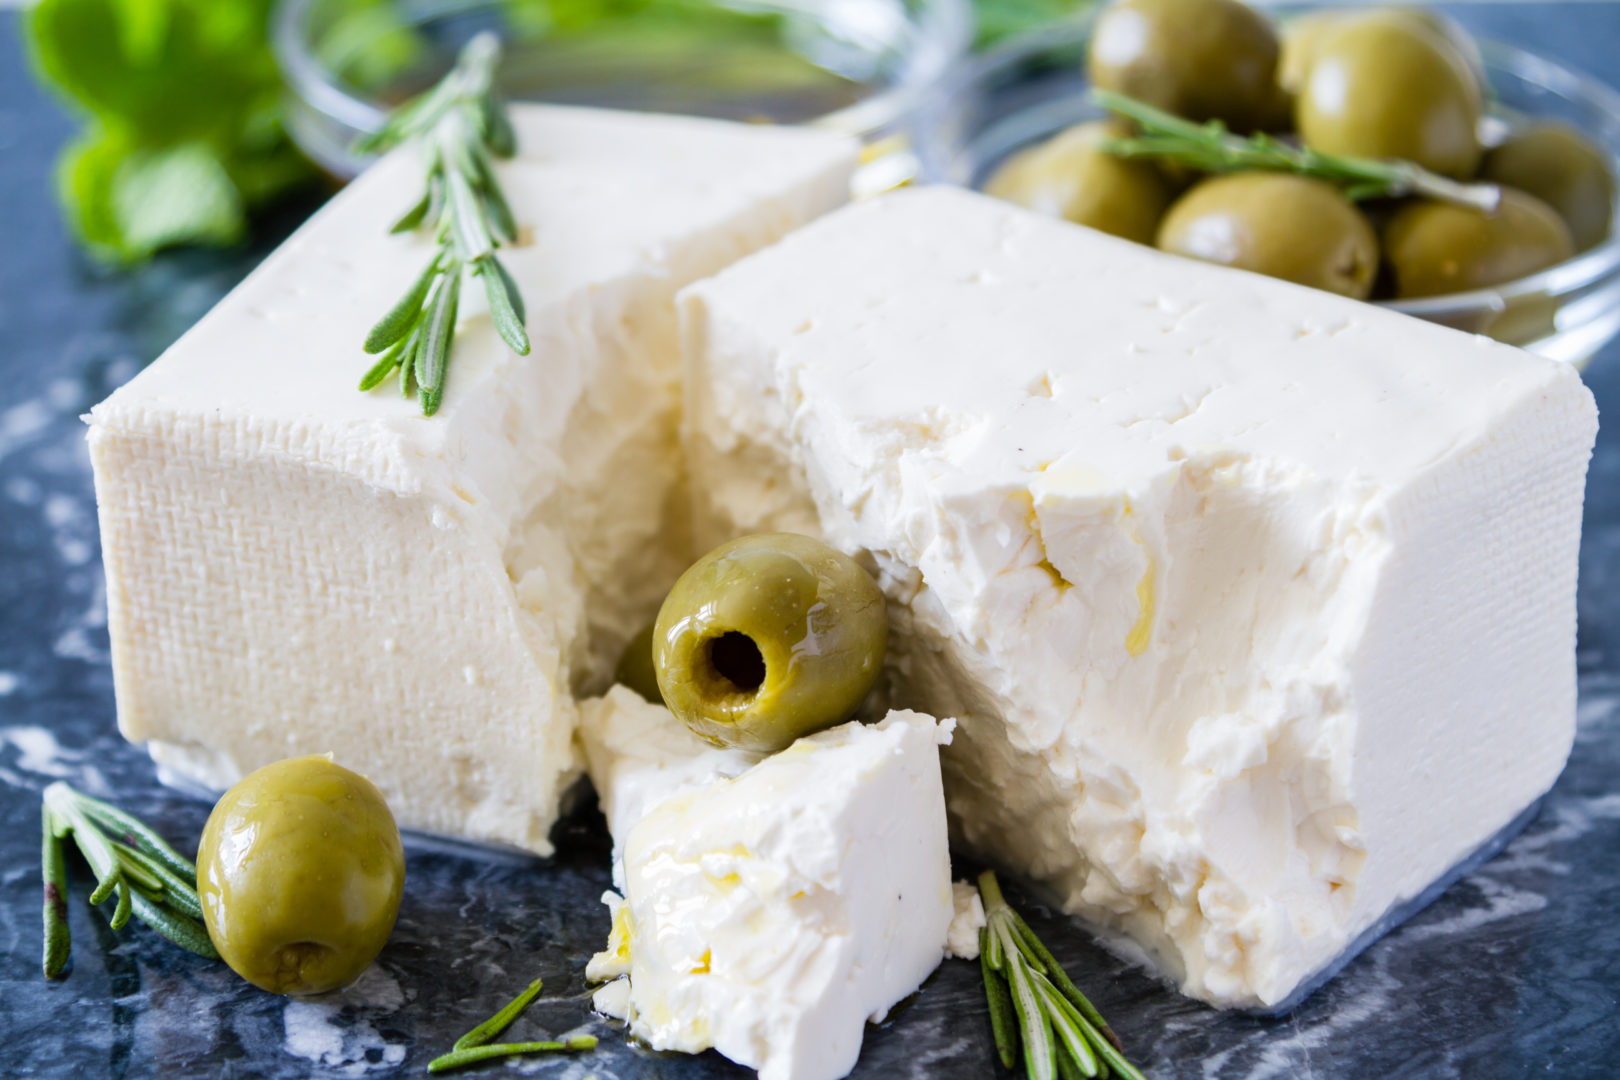 feta syr s olivami